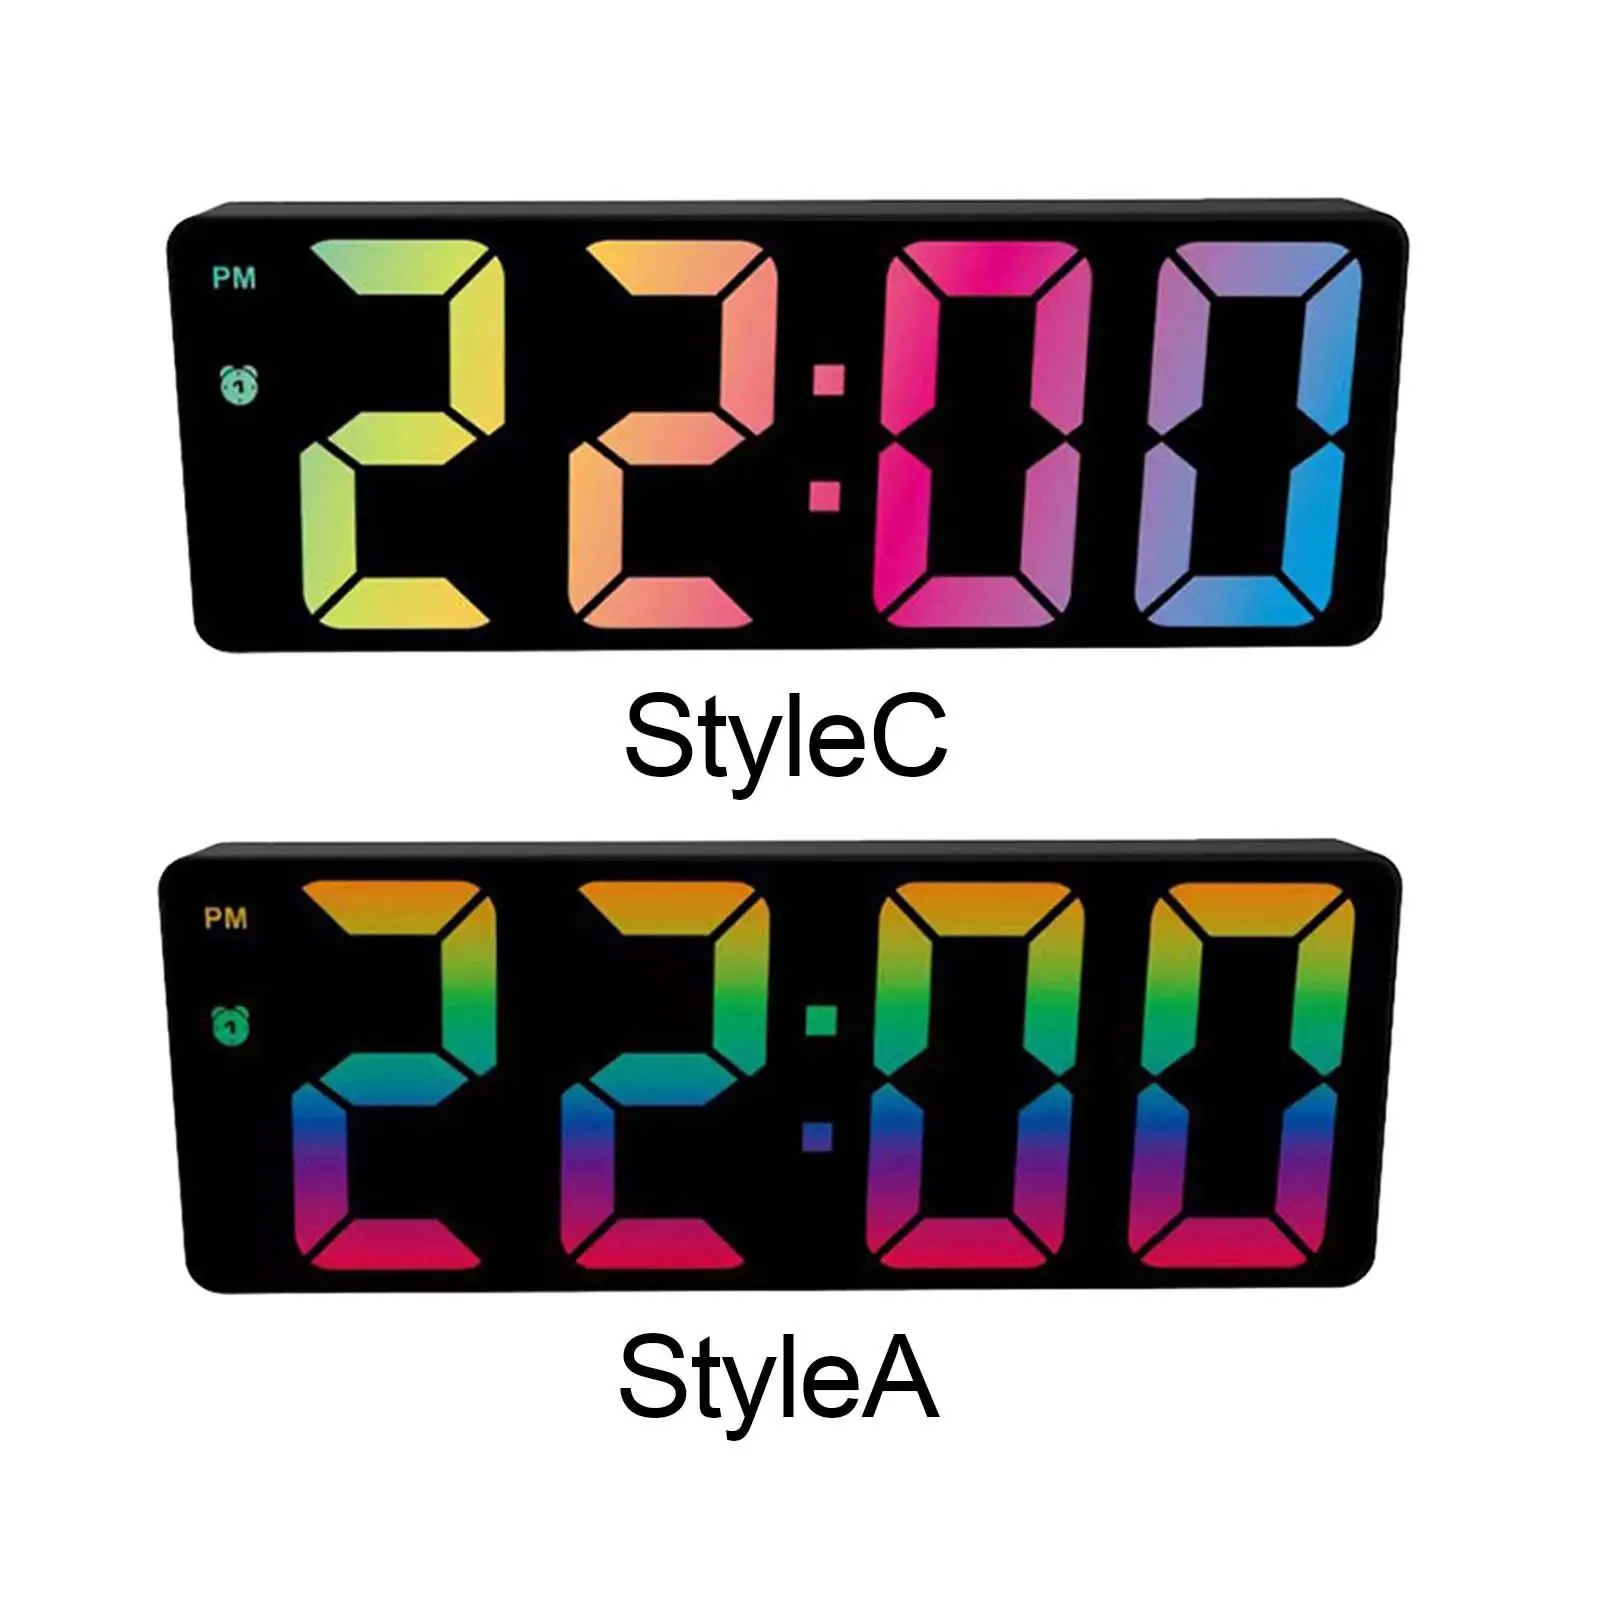 Digital Colorful Alarm Clock Large LED Display Snooze Dimmer battery Calendar for Desktop Gift Bedroom Home Office